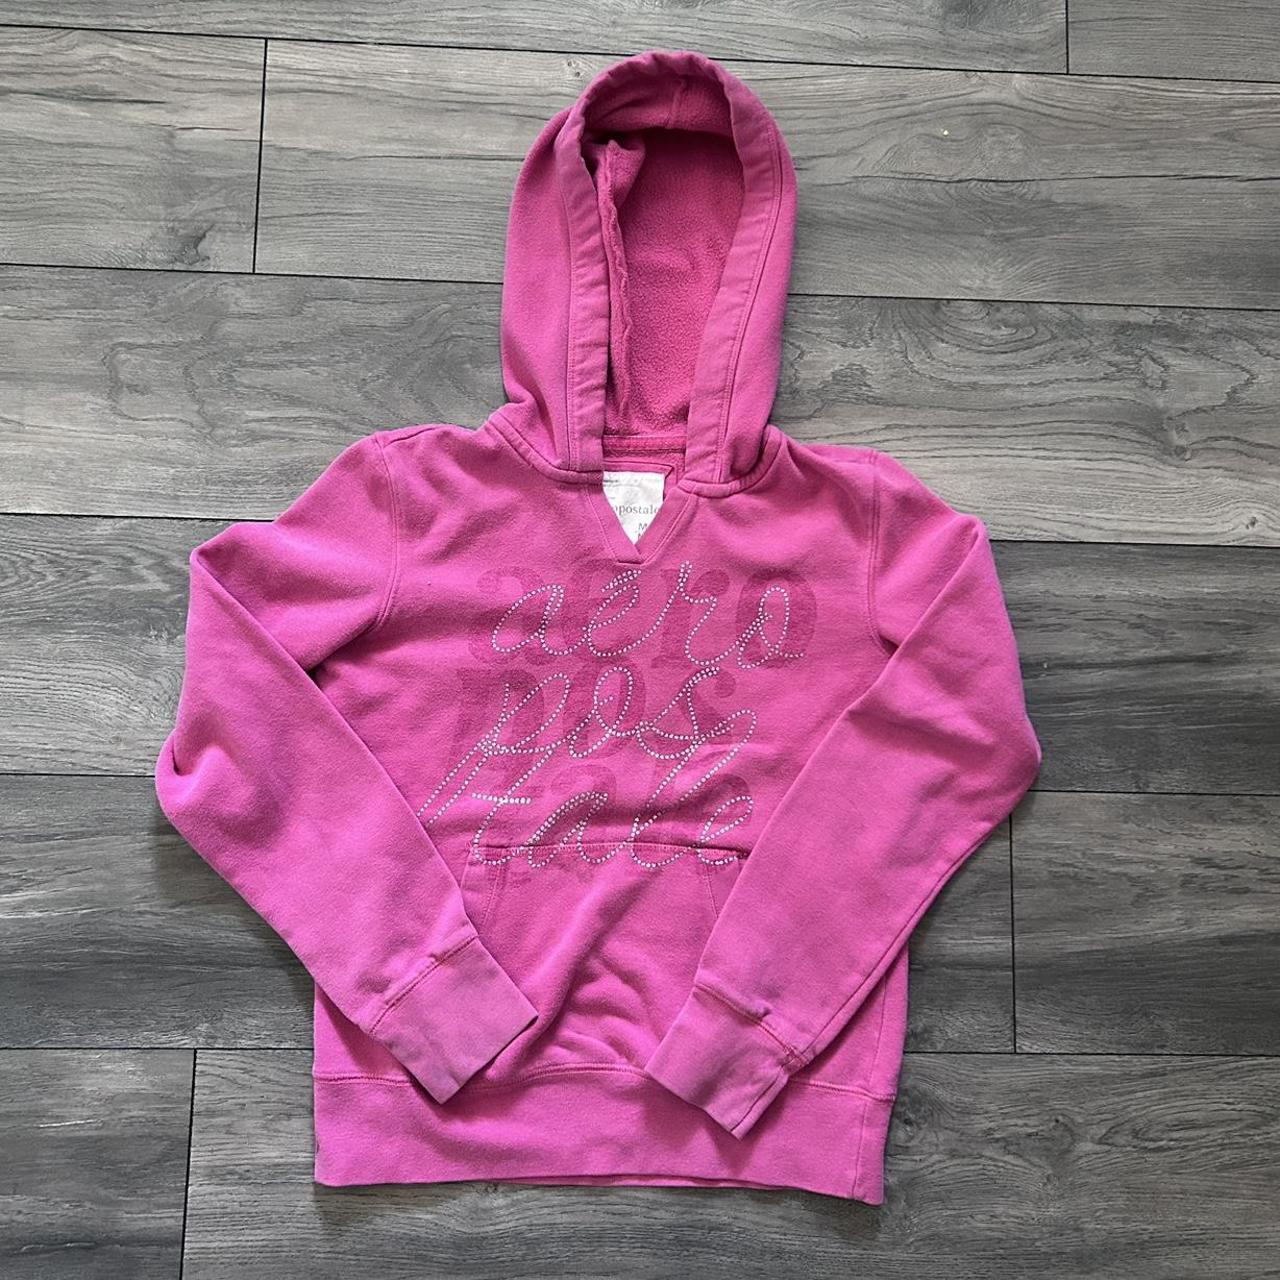 pink bedazzled y2k aeropostale hoodie, says size